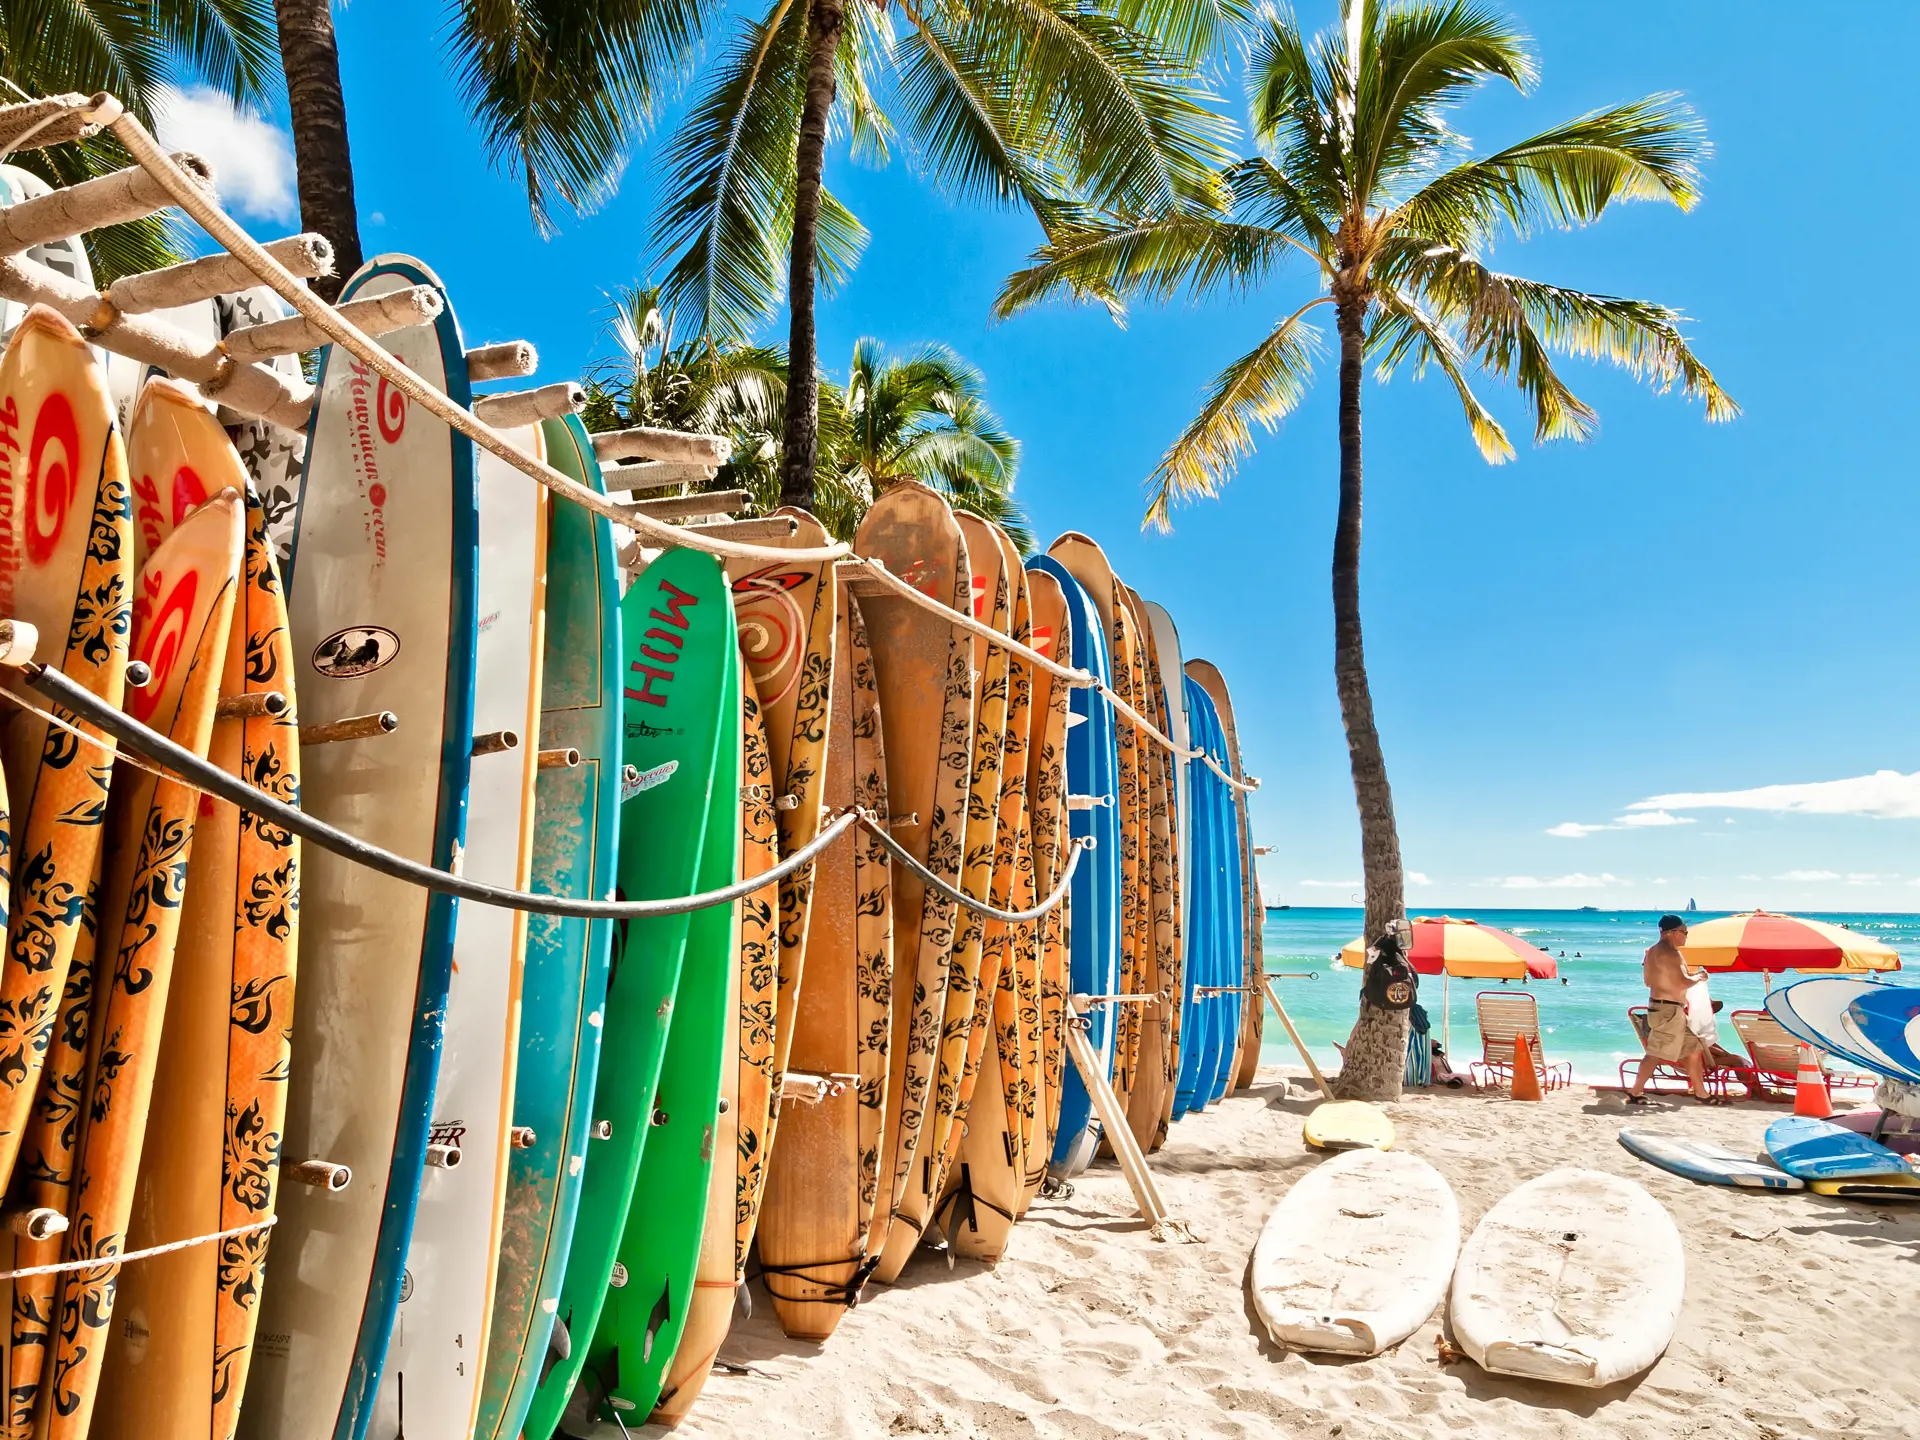 WAIKIKI BEACH - ingen skal være i tvivl om, hvad nationalsporten er på Hawaii, hvor de lokale traditionelt har surfet i gennem generationer, Check Point Travel